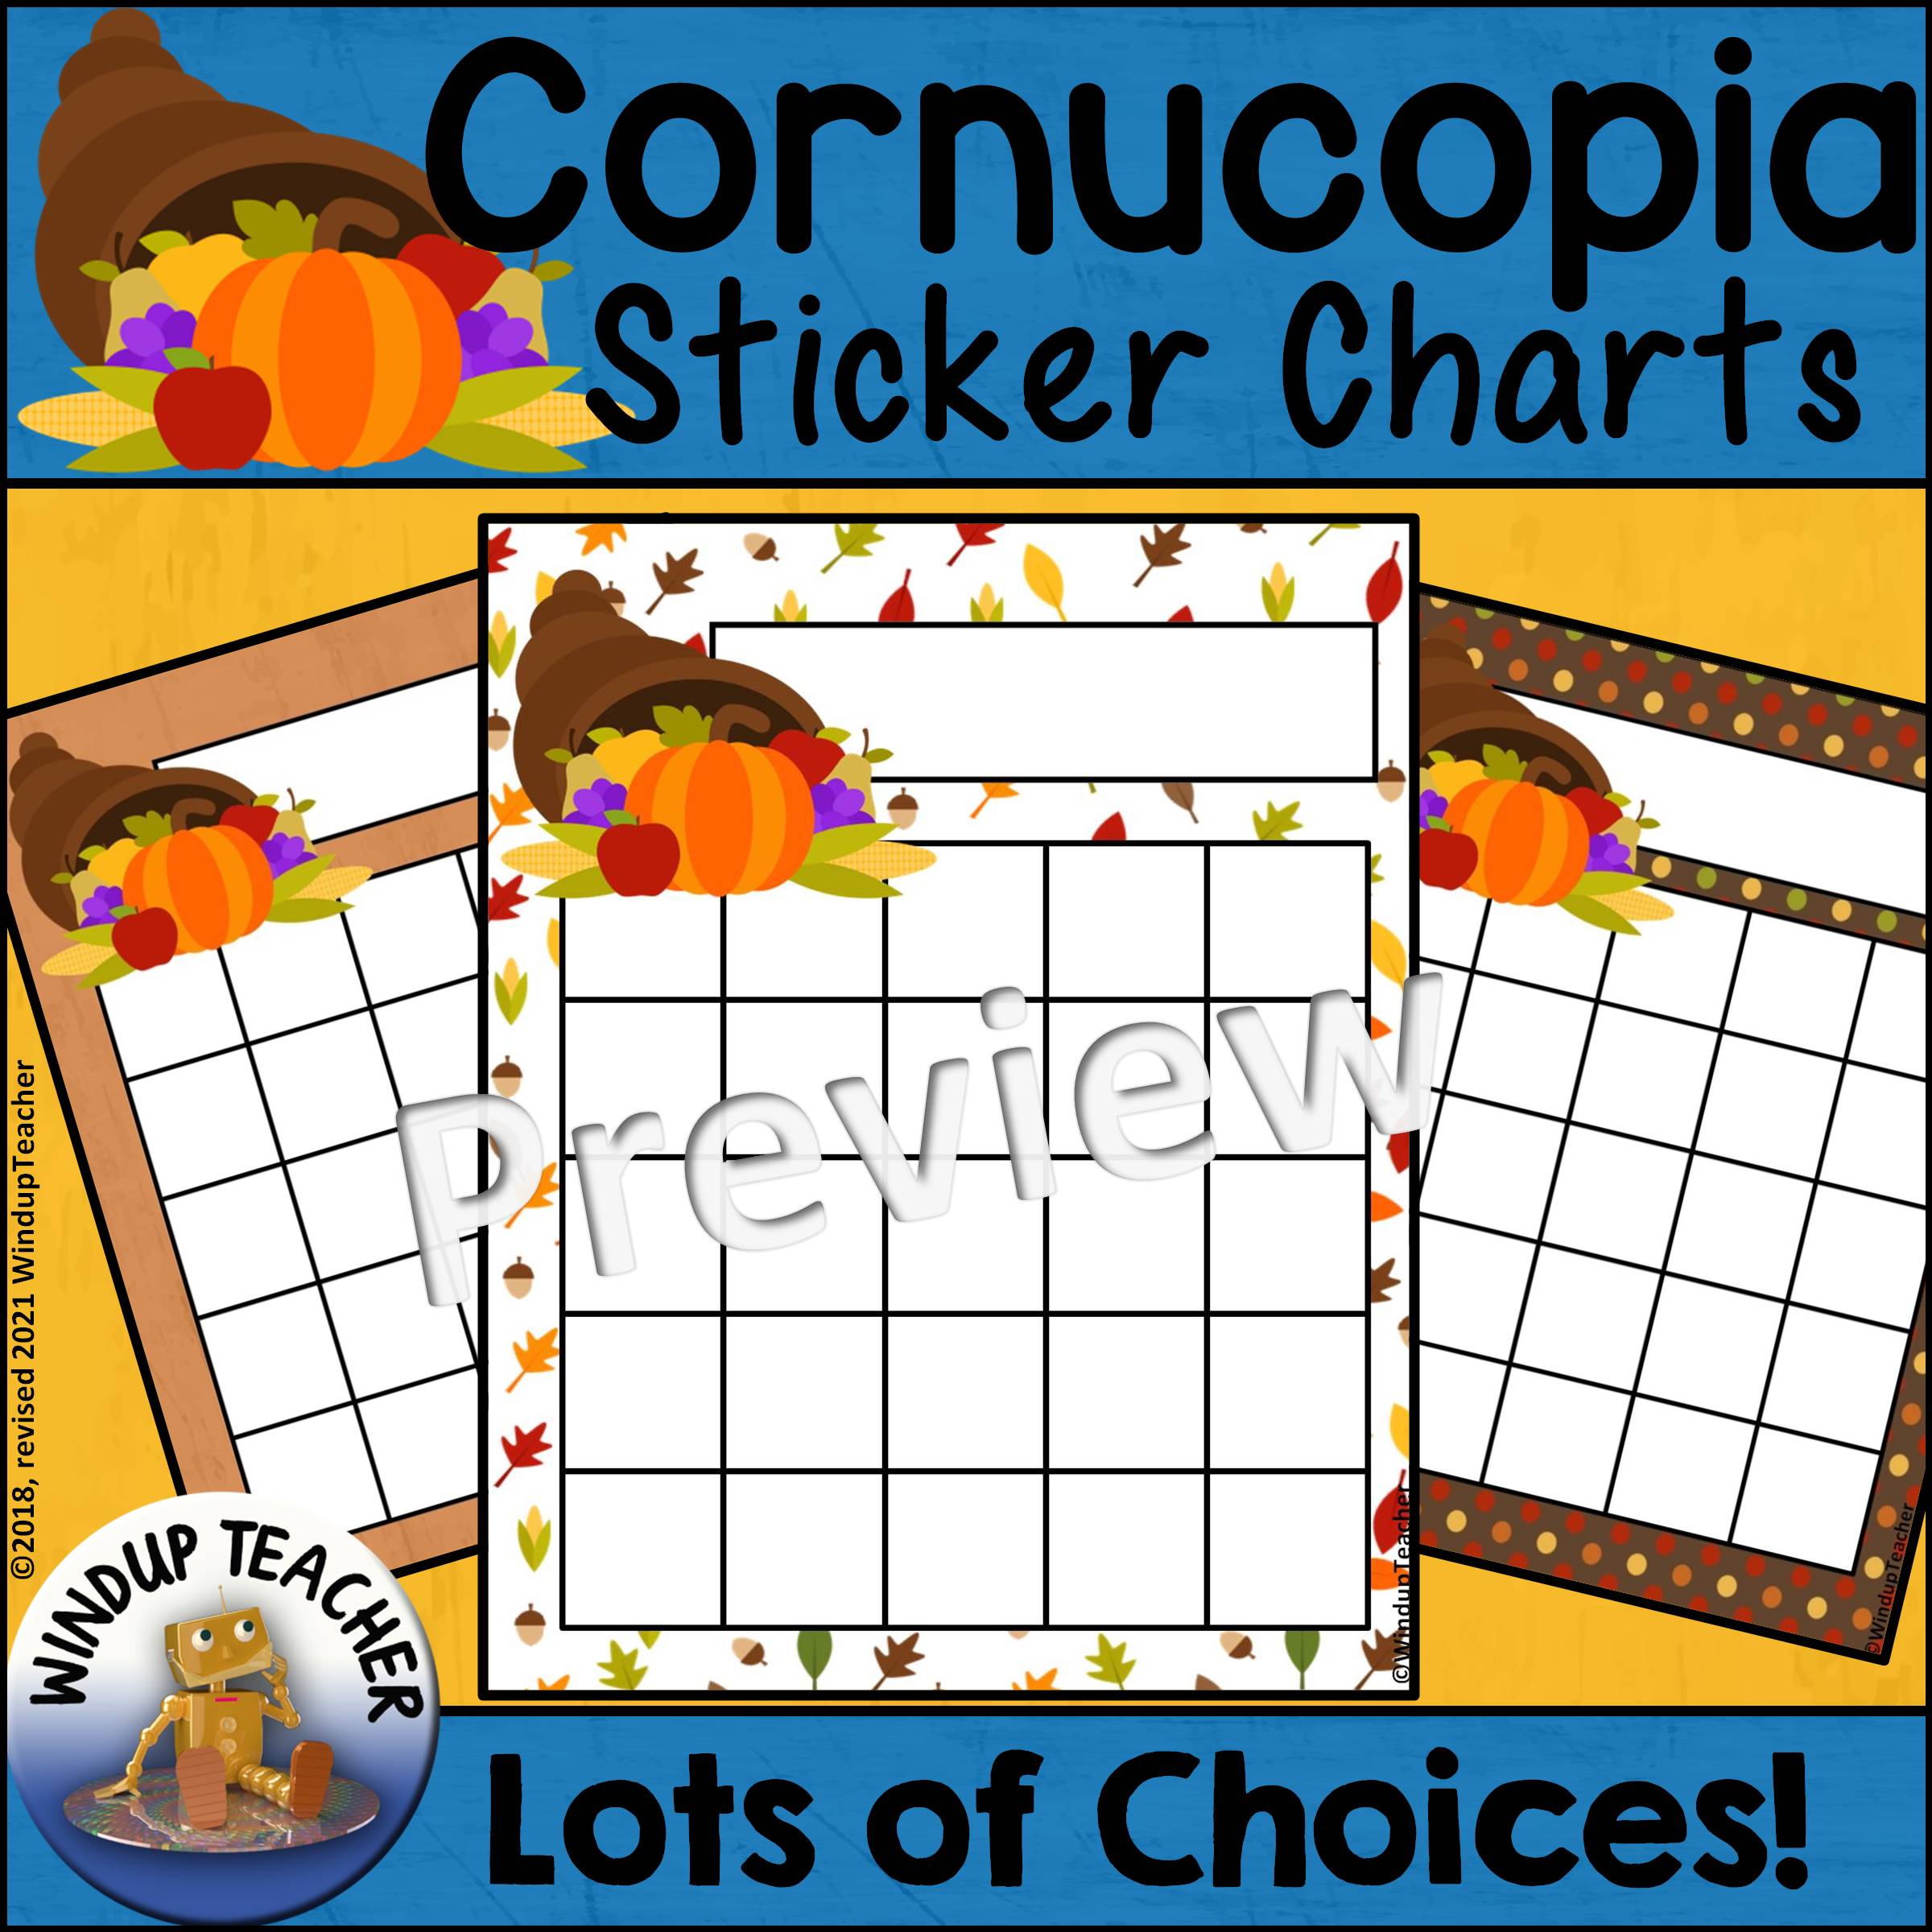 Cornucopia Sticker Charts